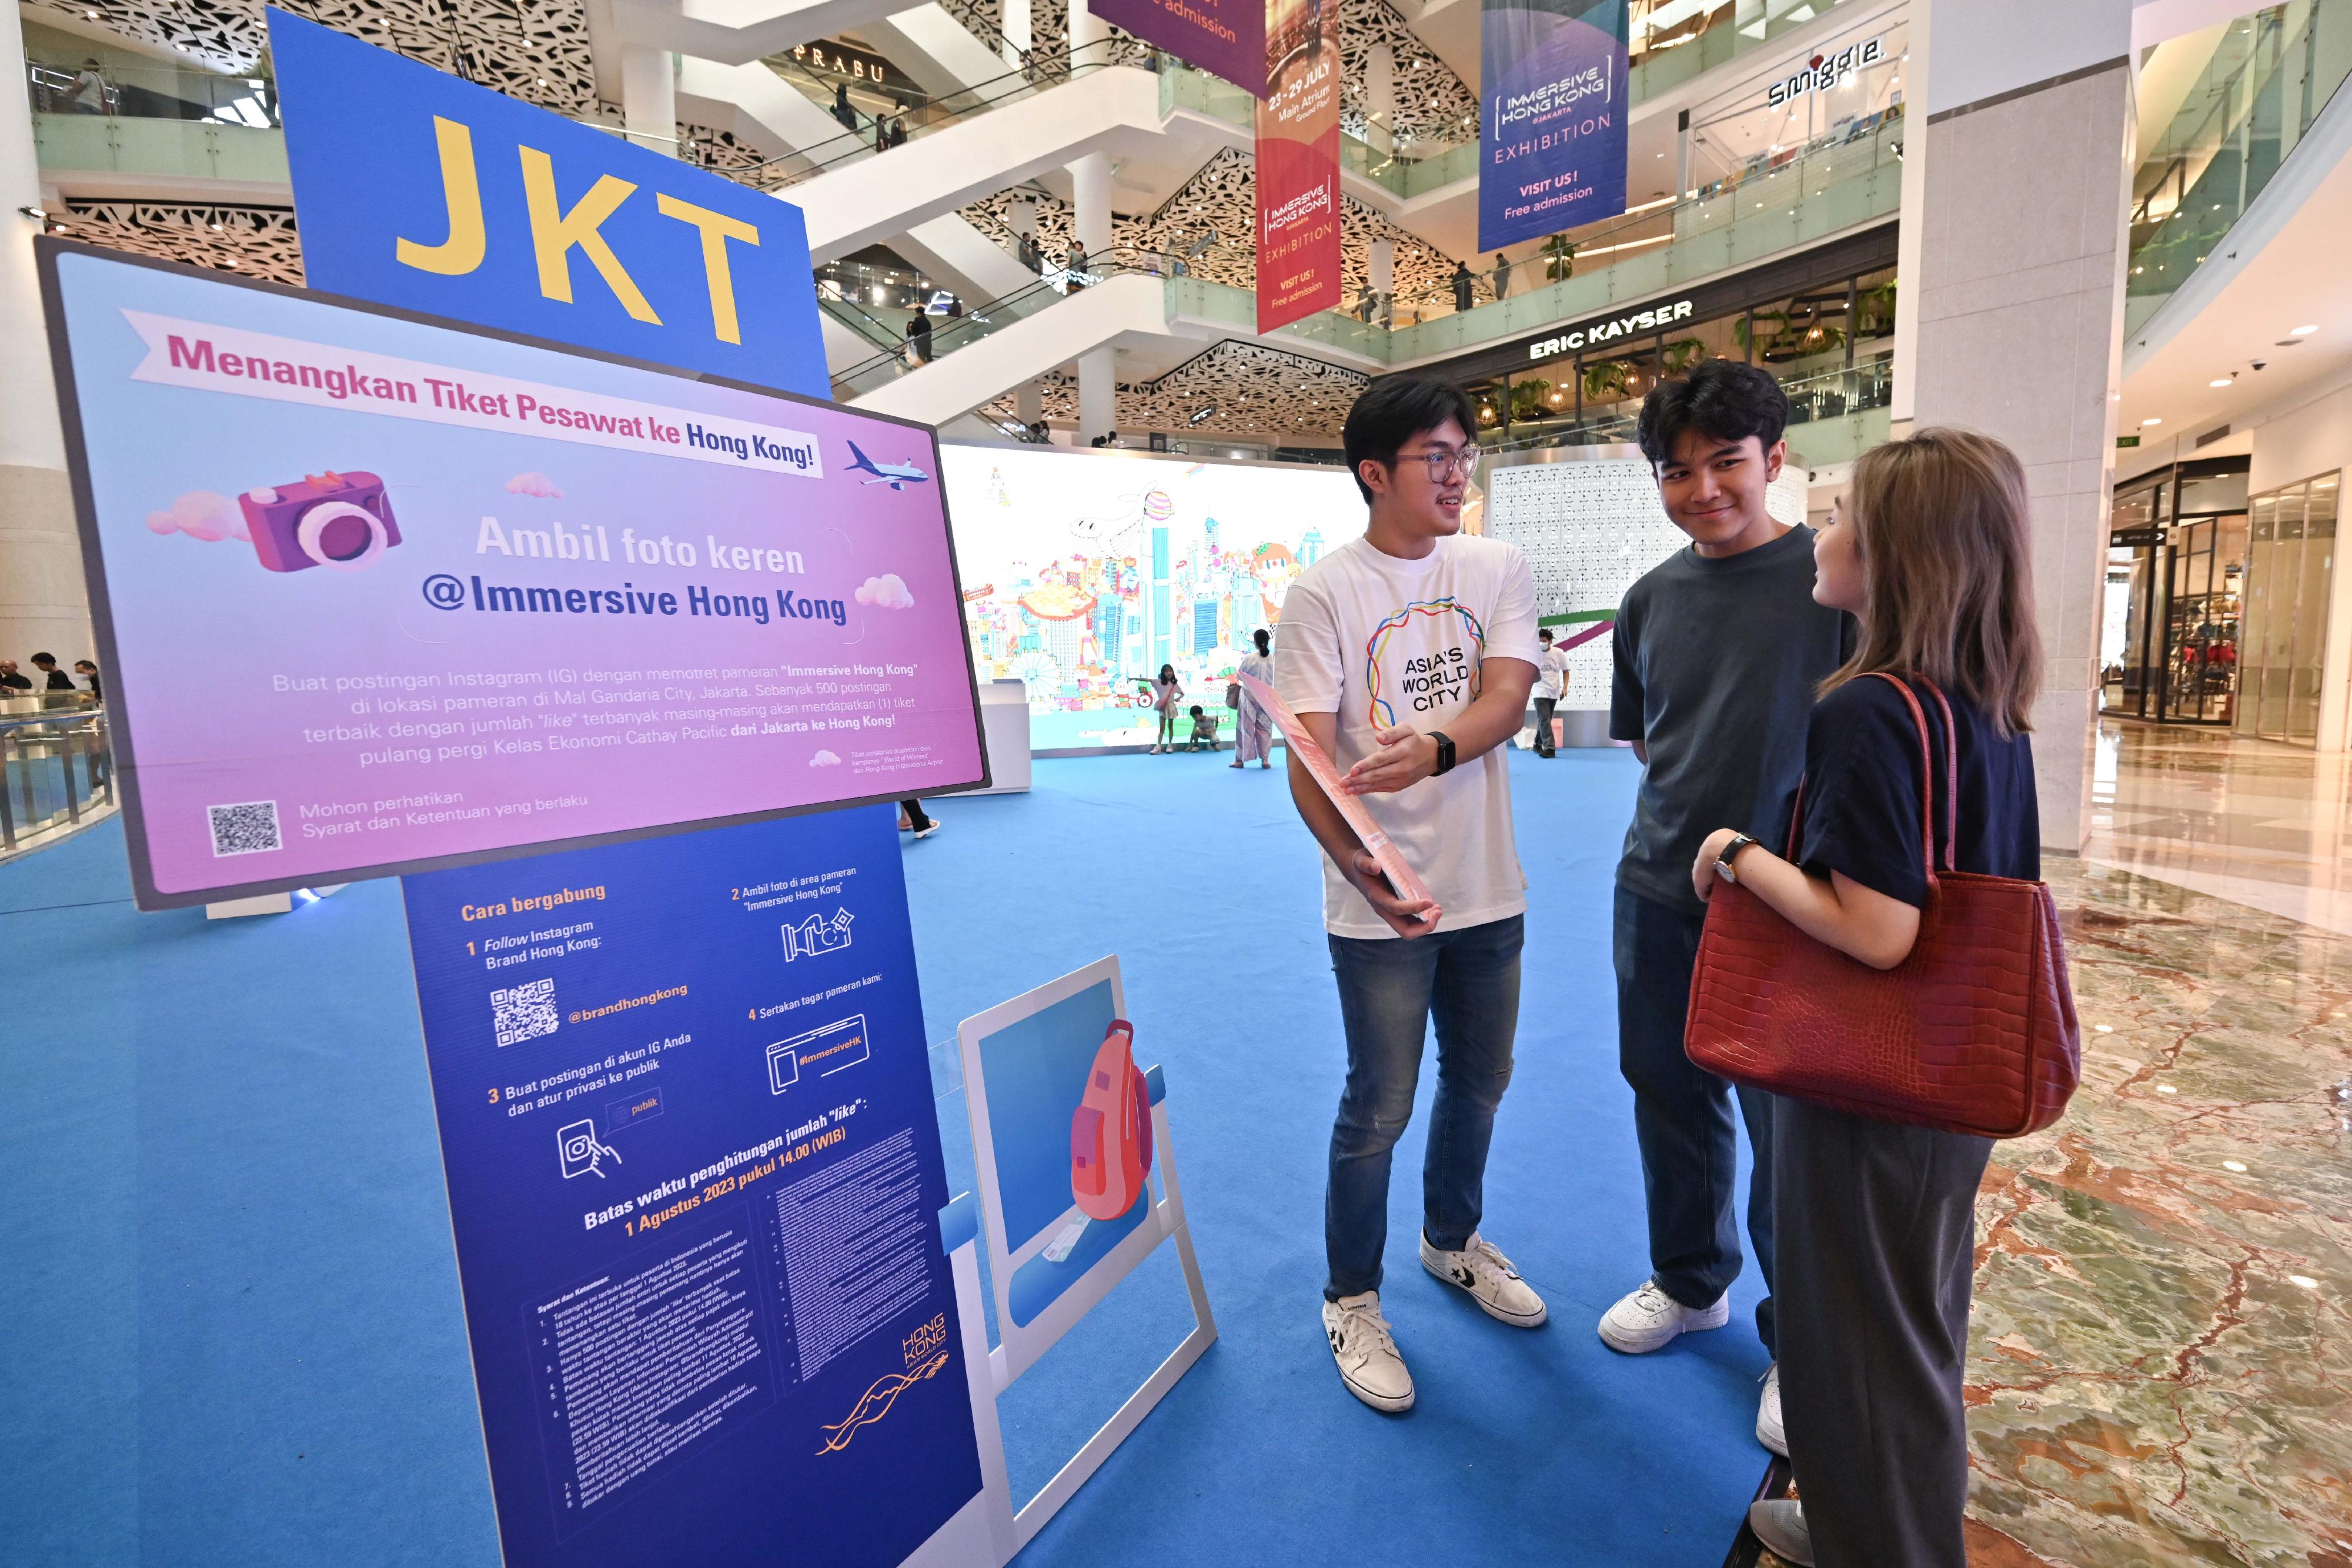 「香港─沉浸式之旅」巡迴展覽今日（七月二十三日）在印尼雅加達展開，是特區政府在東南亞國家聯盟國家舉辦的推廣活動之一，以藝術科技展示香港獨有的實力、優勢和機遇。展覽期間同時舉行「快拍留影」互動遊戲，以吸引更多旅客訪港，獎品為雅加達至香港的來回機票，由香港國際機場「飛遇世界鉅賞」活動贊助。圖示參觀者查閱遊戲詳情。